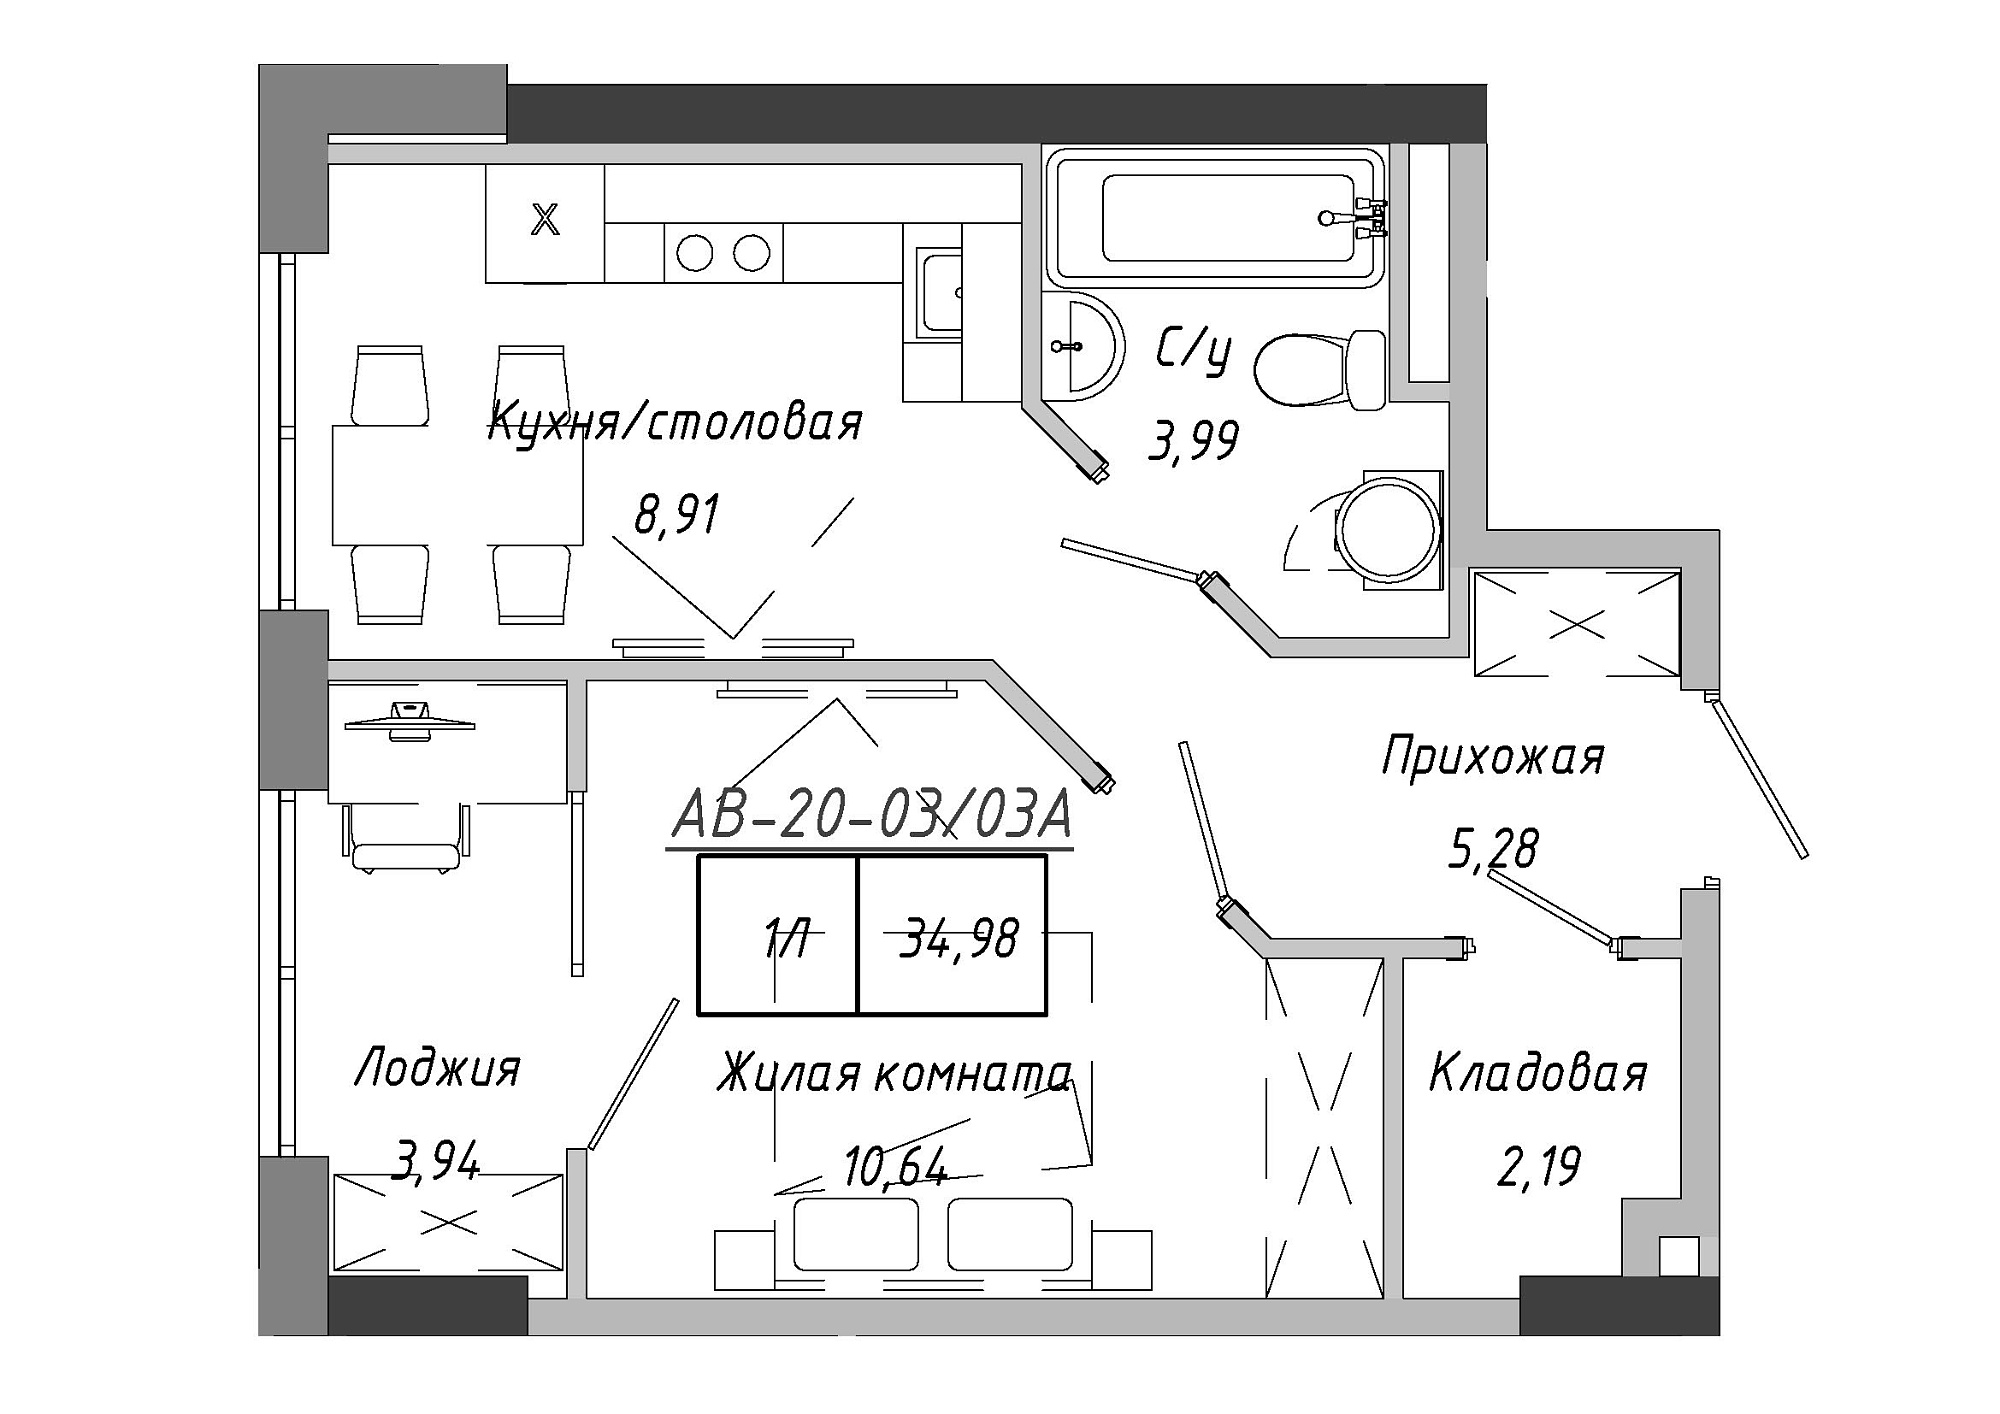 Планування 1-к квартира площею 34.98м2, AB-20-03/0003а.